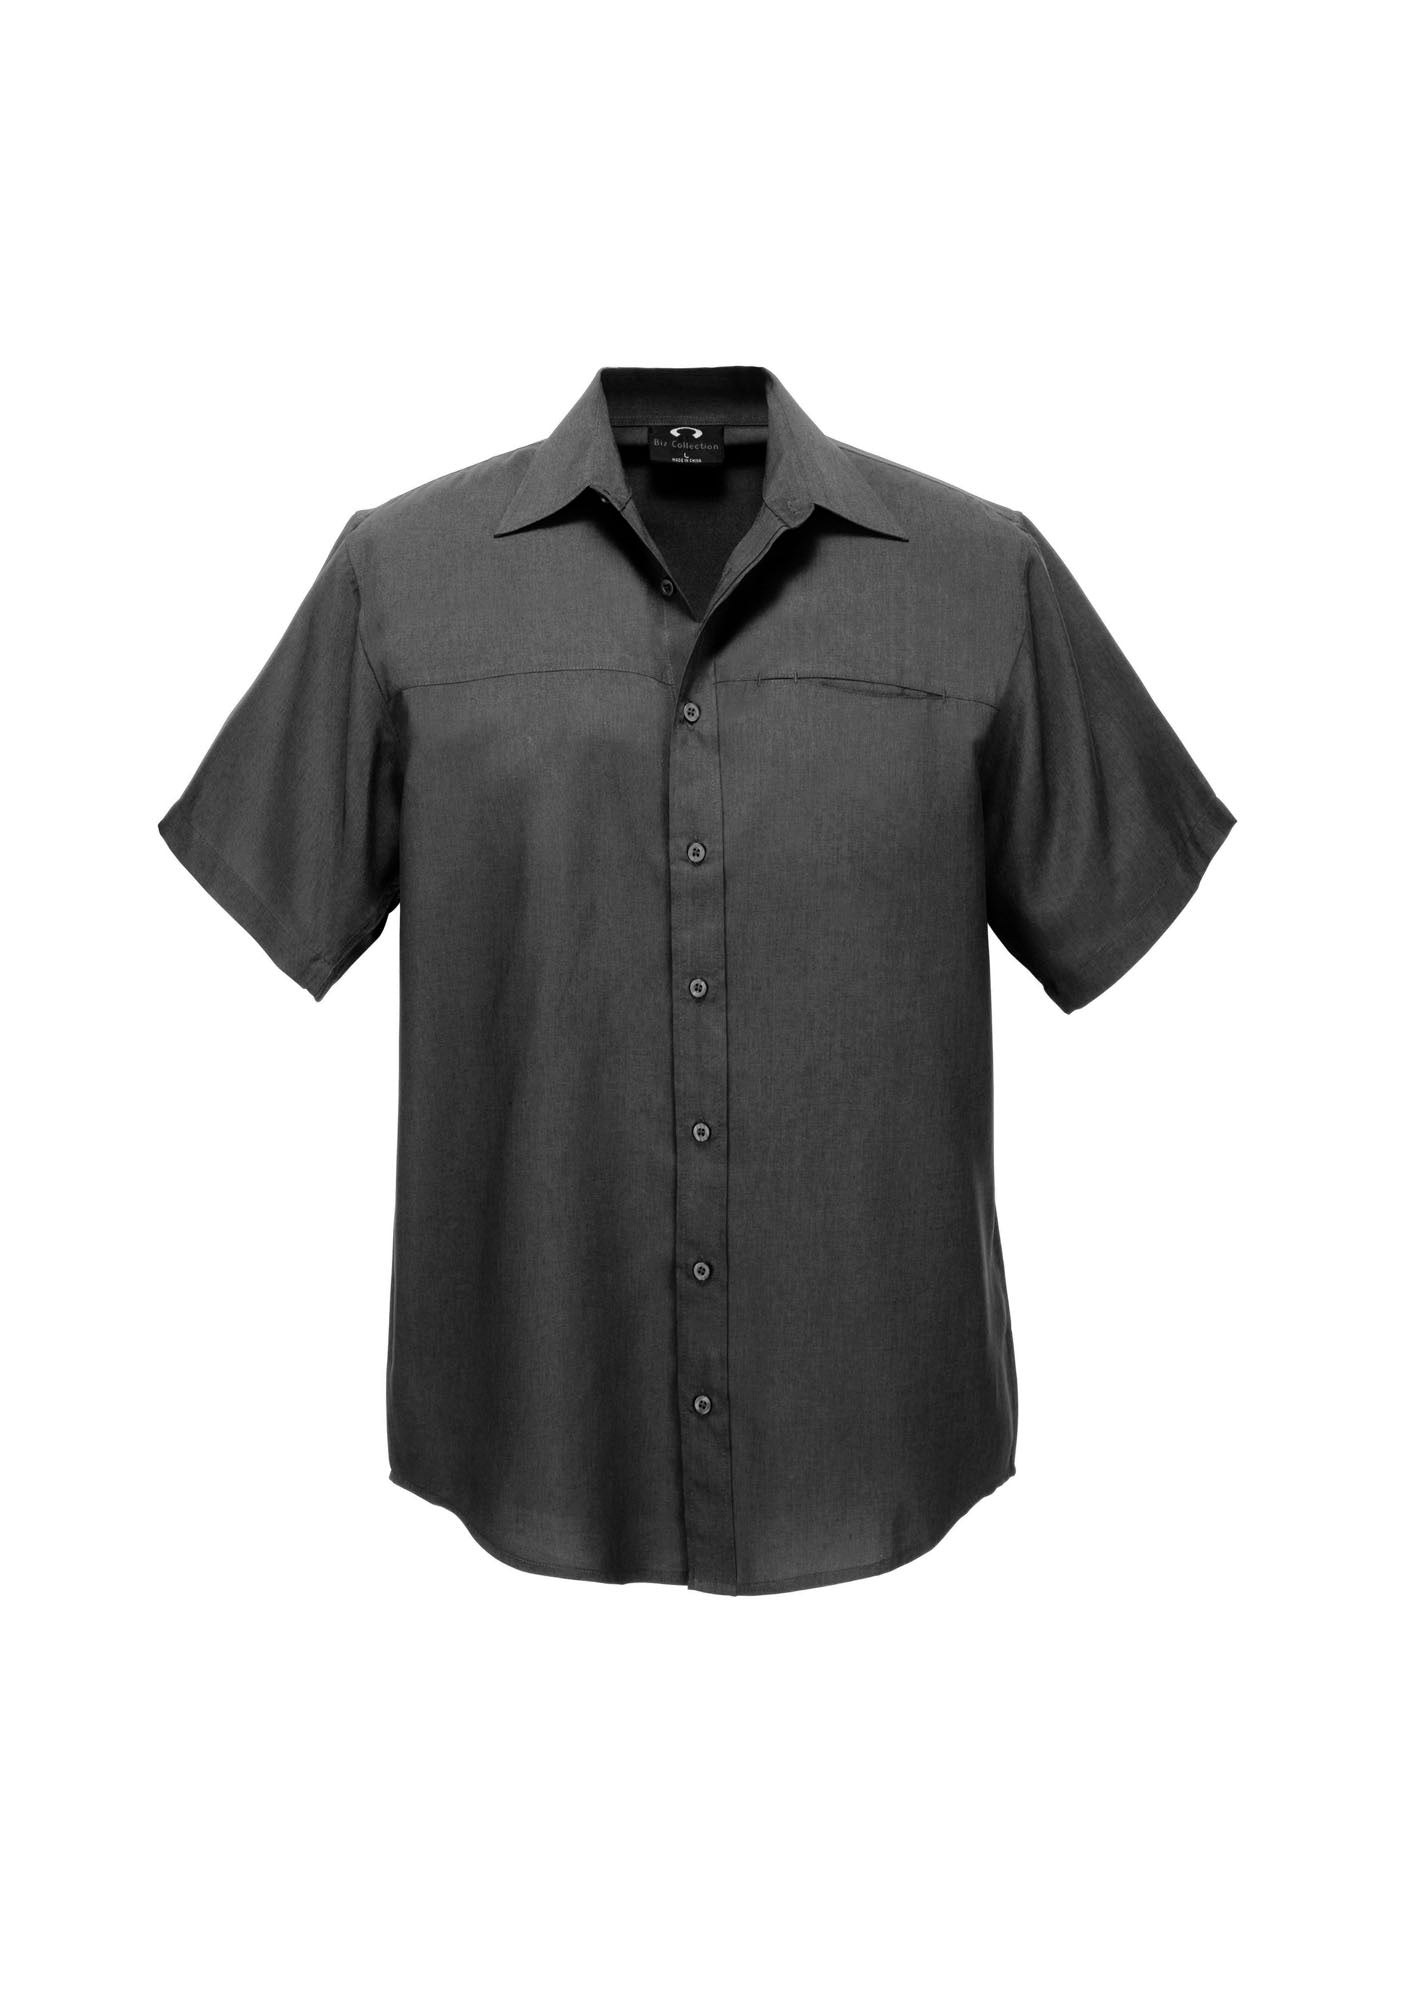 Biz Care Mens Plain Oasis Short Sleeve Shirt  SH3603 - Star Uniforms Australia